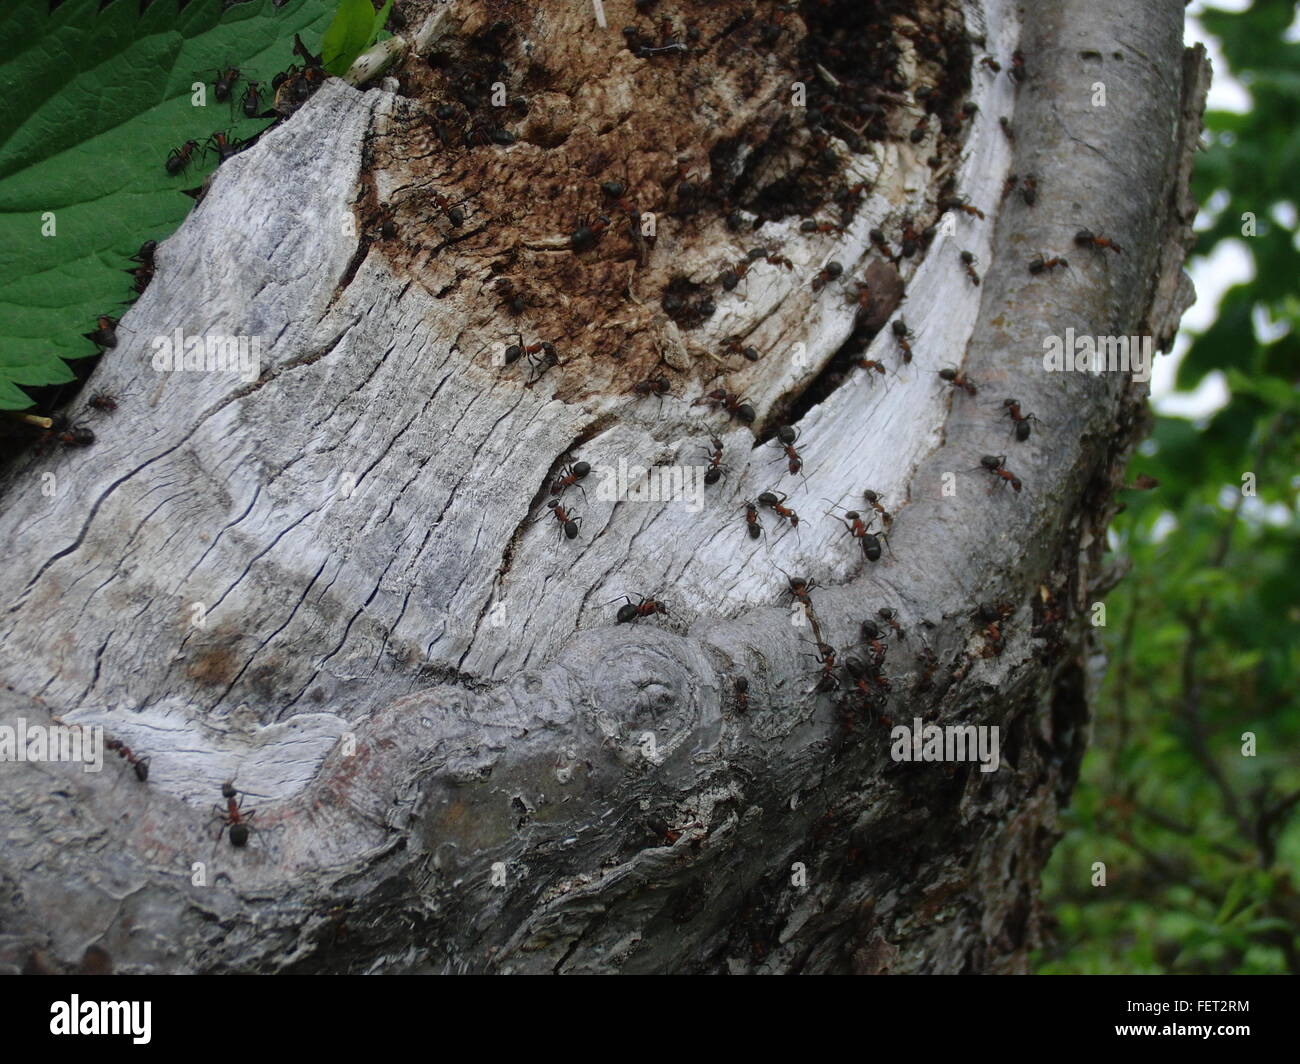 Ameisen am Baum im Wald Stockfotografie - Alamy